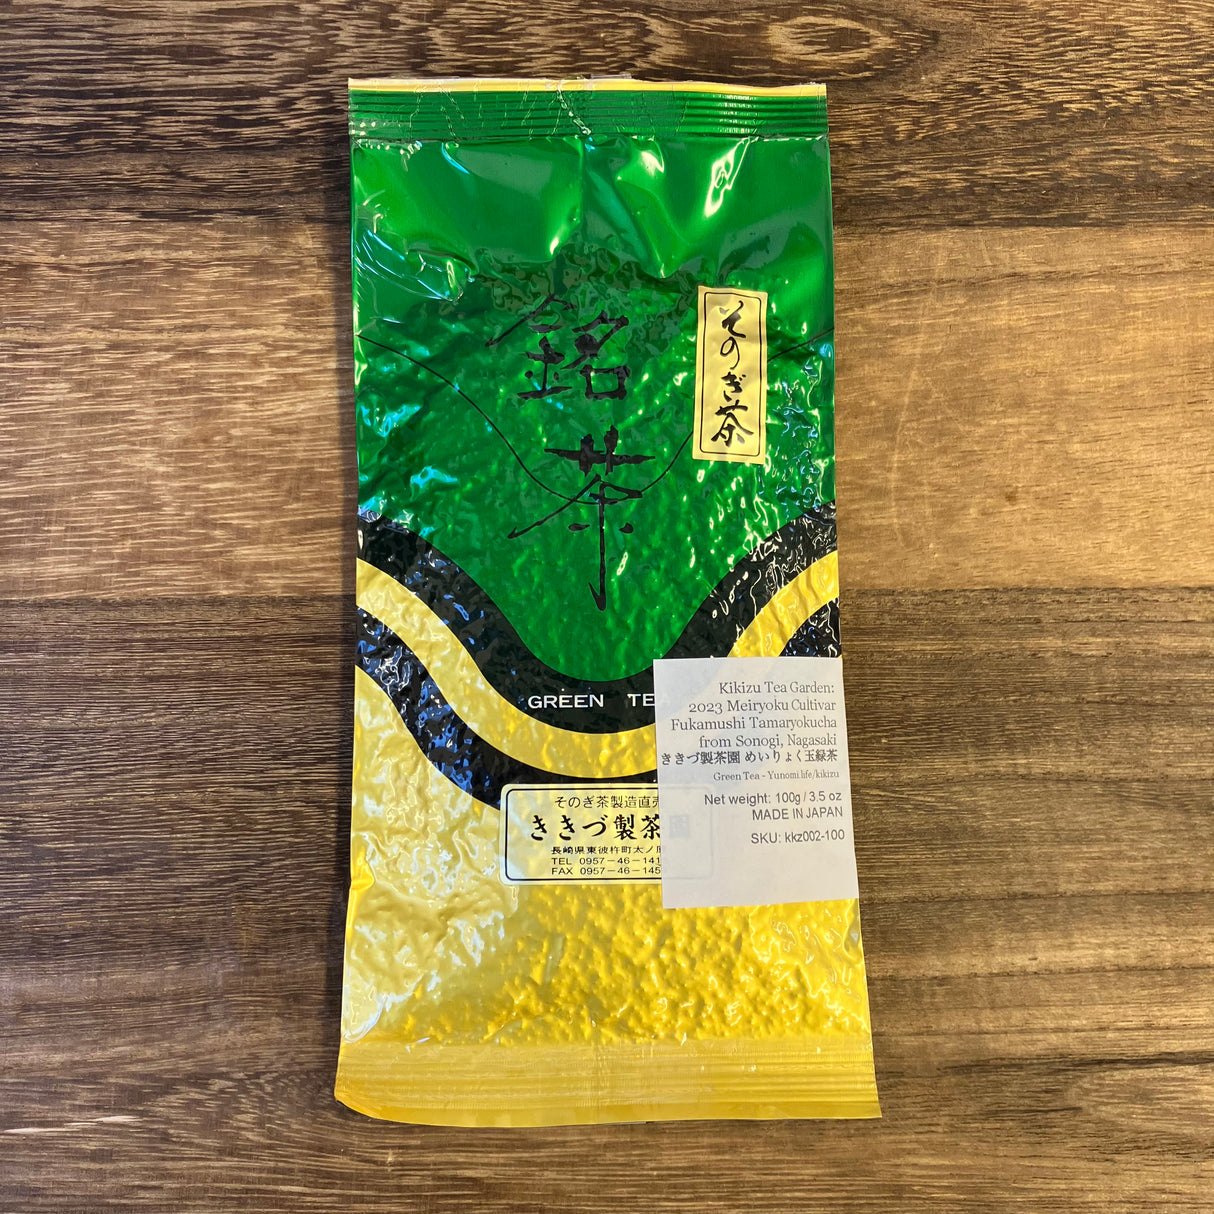 [2024] 10g / 0.35 oz / May / Yunomi bag Tea Garden - Meiryoku Cultivar Fukamushi Tamaryokucha from Sonogi, Nagasaki